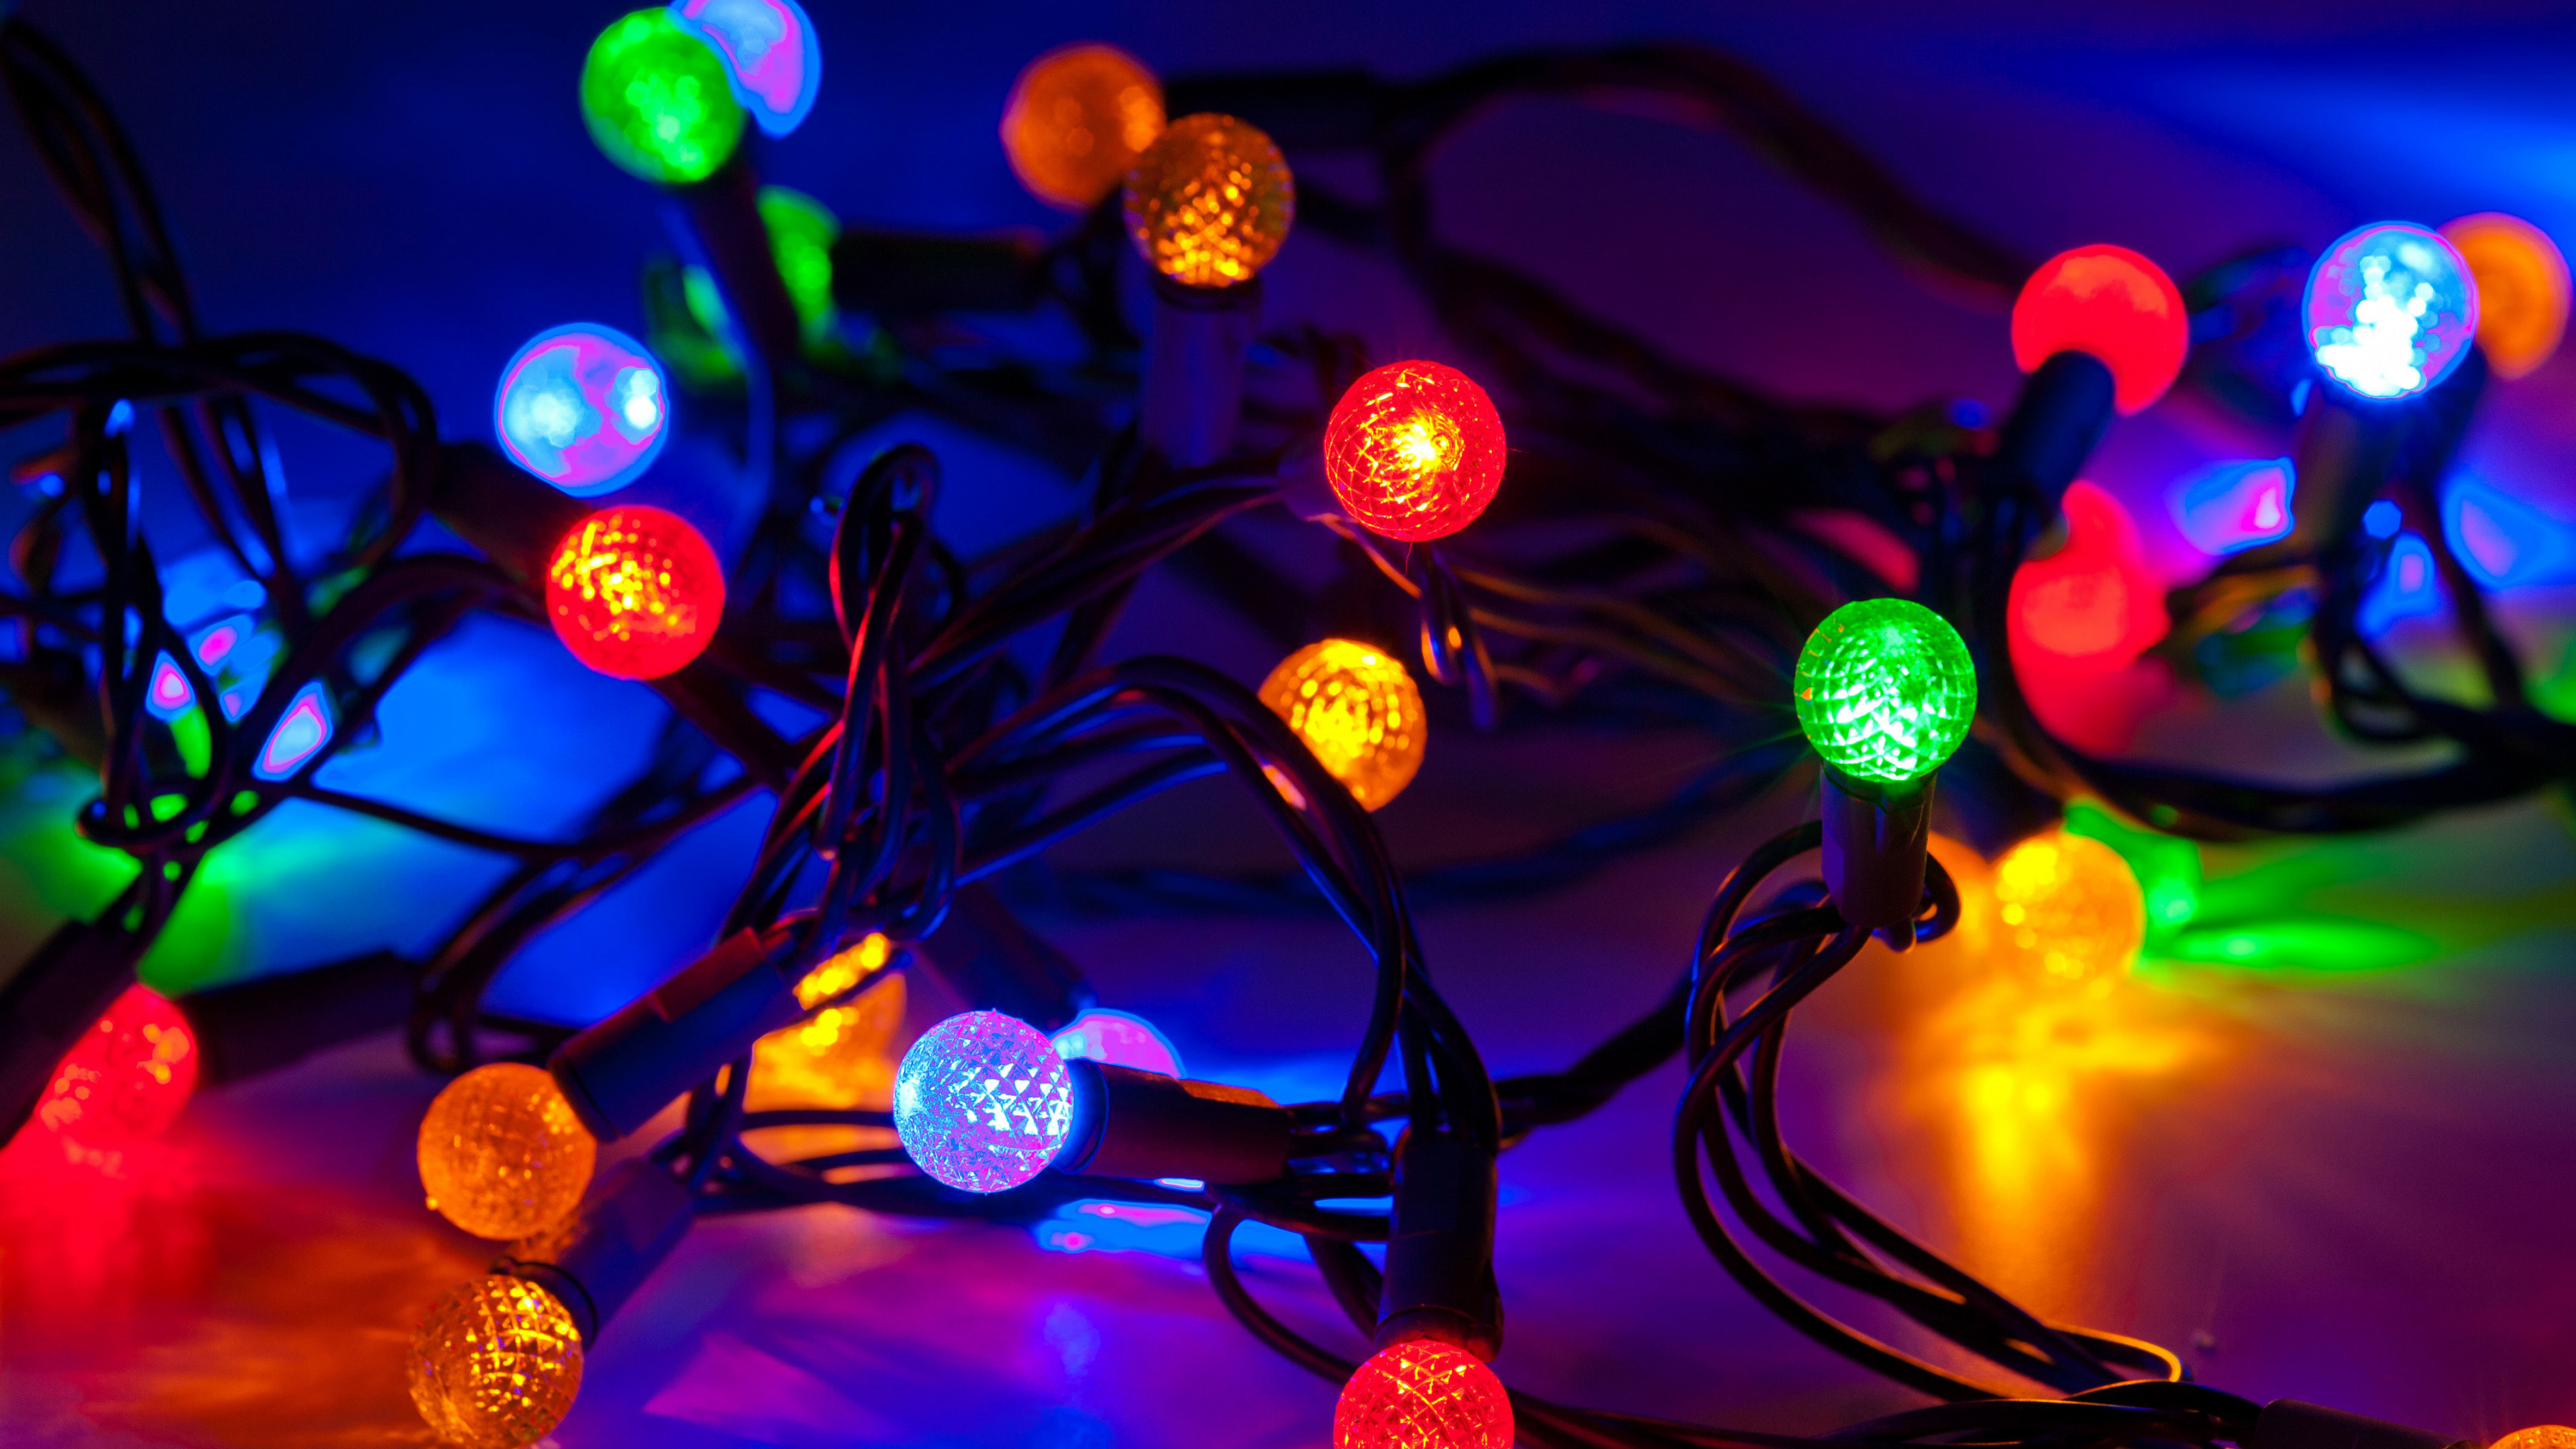 圣诞彩灯, 圣诞节那天, 光, 圣诞装饰, 发光二极管 壁纸 3840x2160 允许